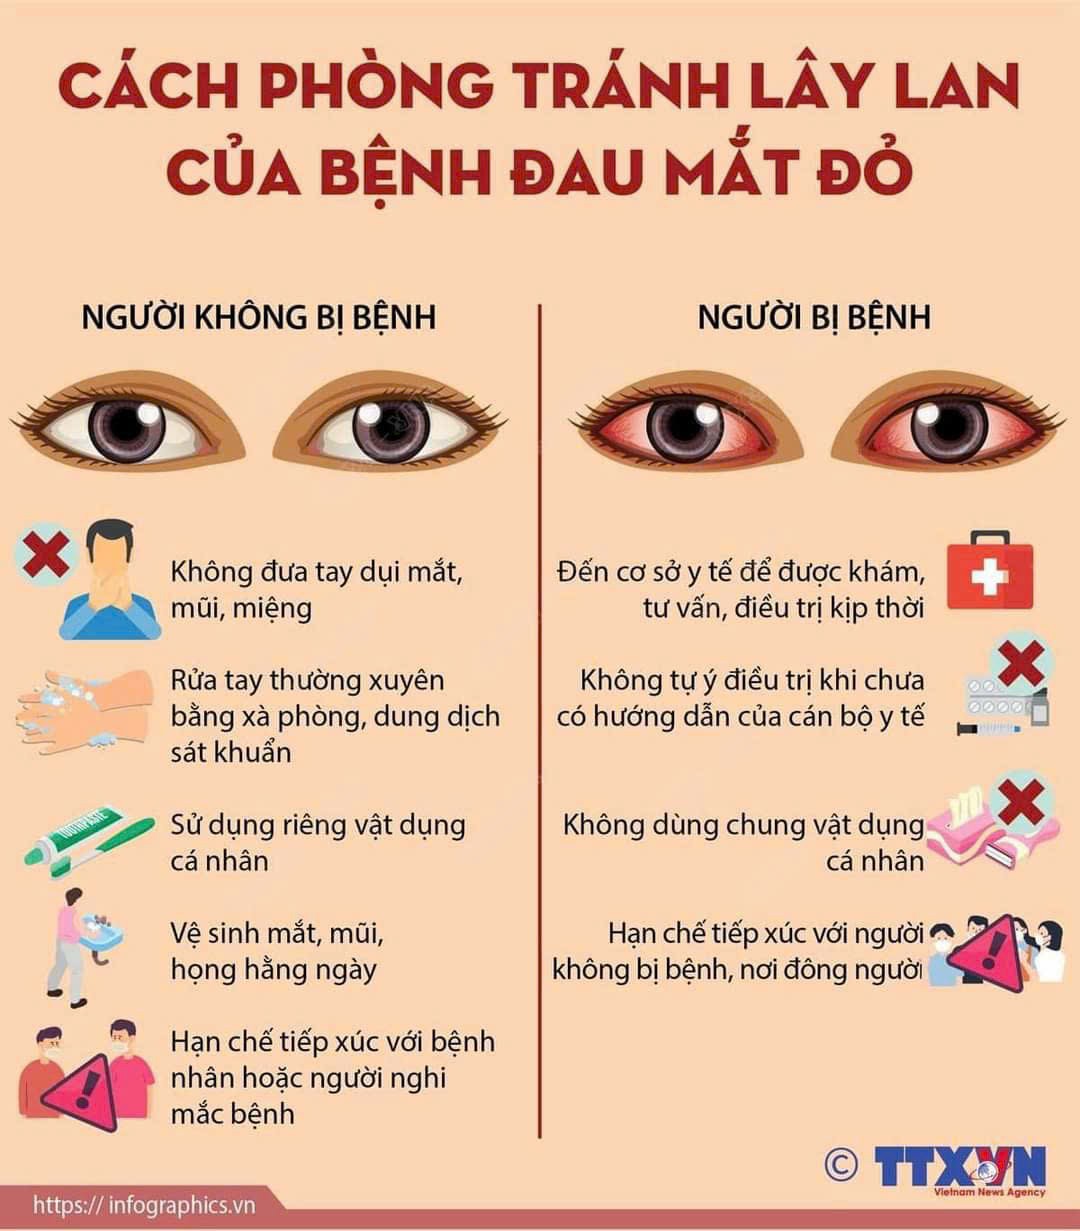 Cách phòng tránh lây lan bệnh đau mắt đỏ